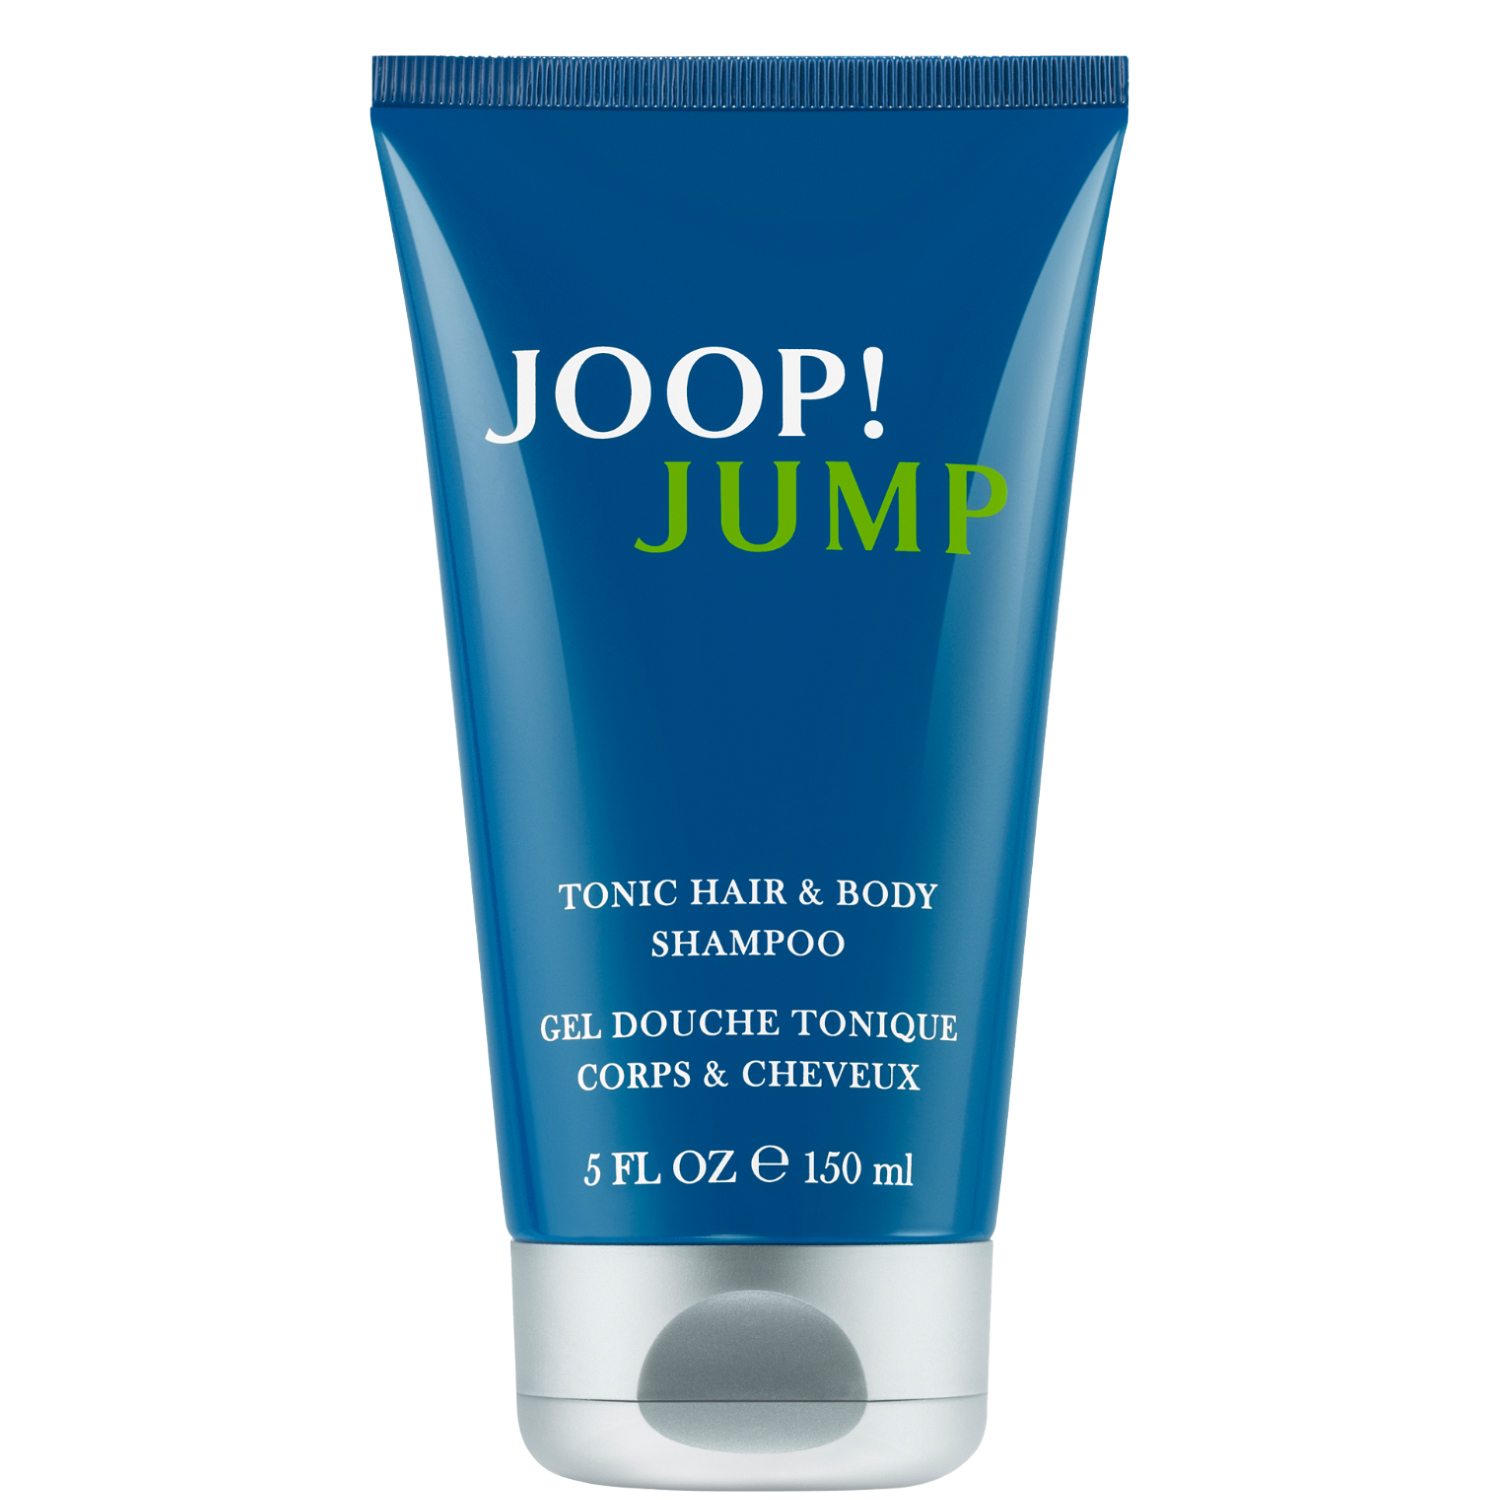 Joop! Jump Shower Gel 150ml